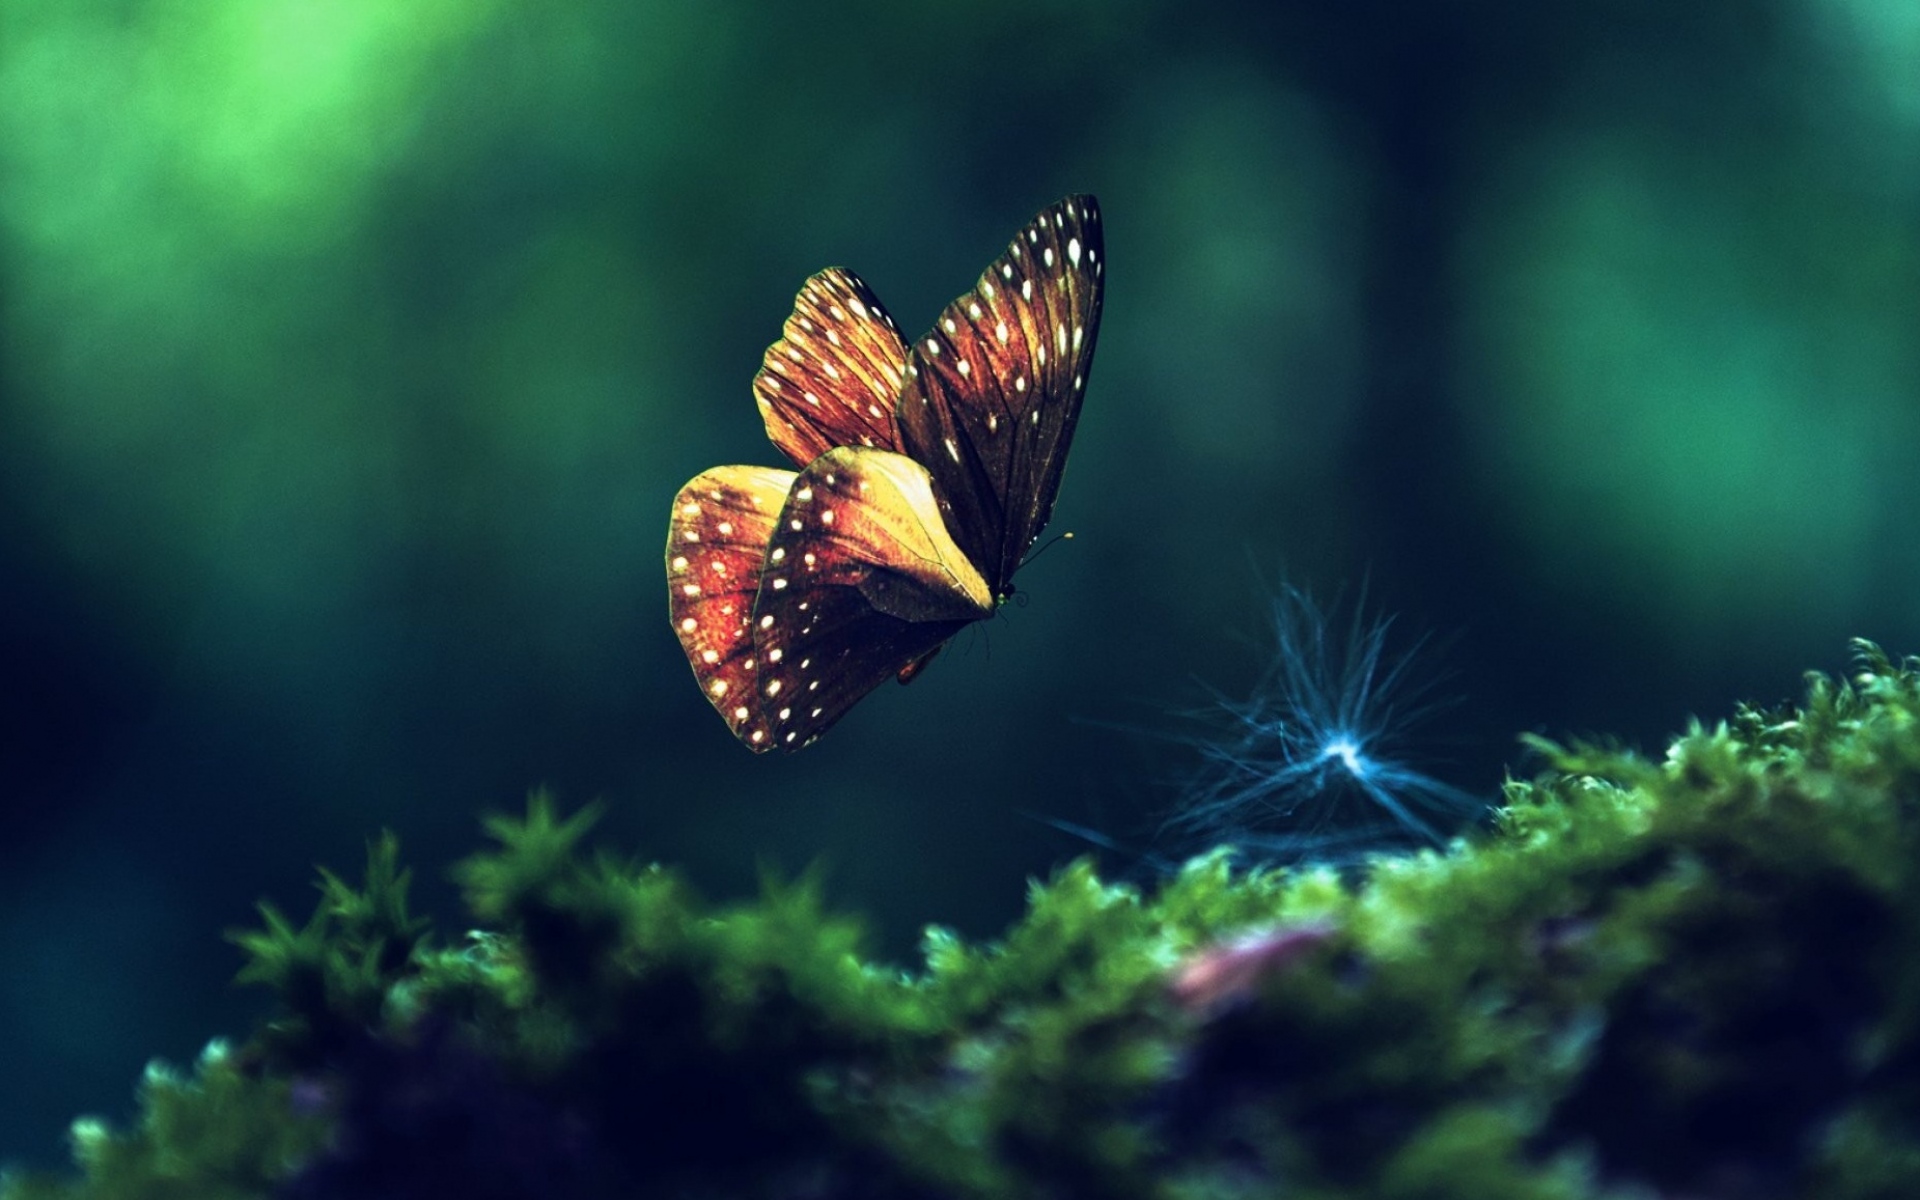 Hình ảnh con bướm đang bay đẹp nhất